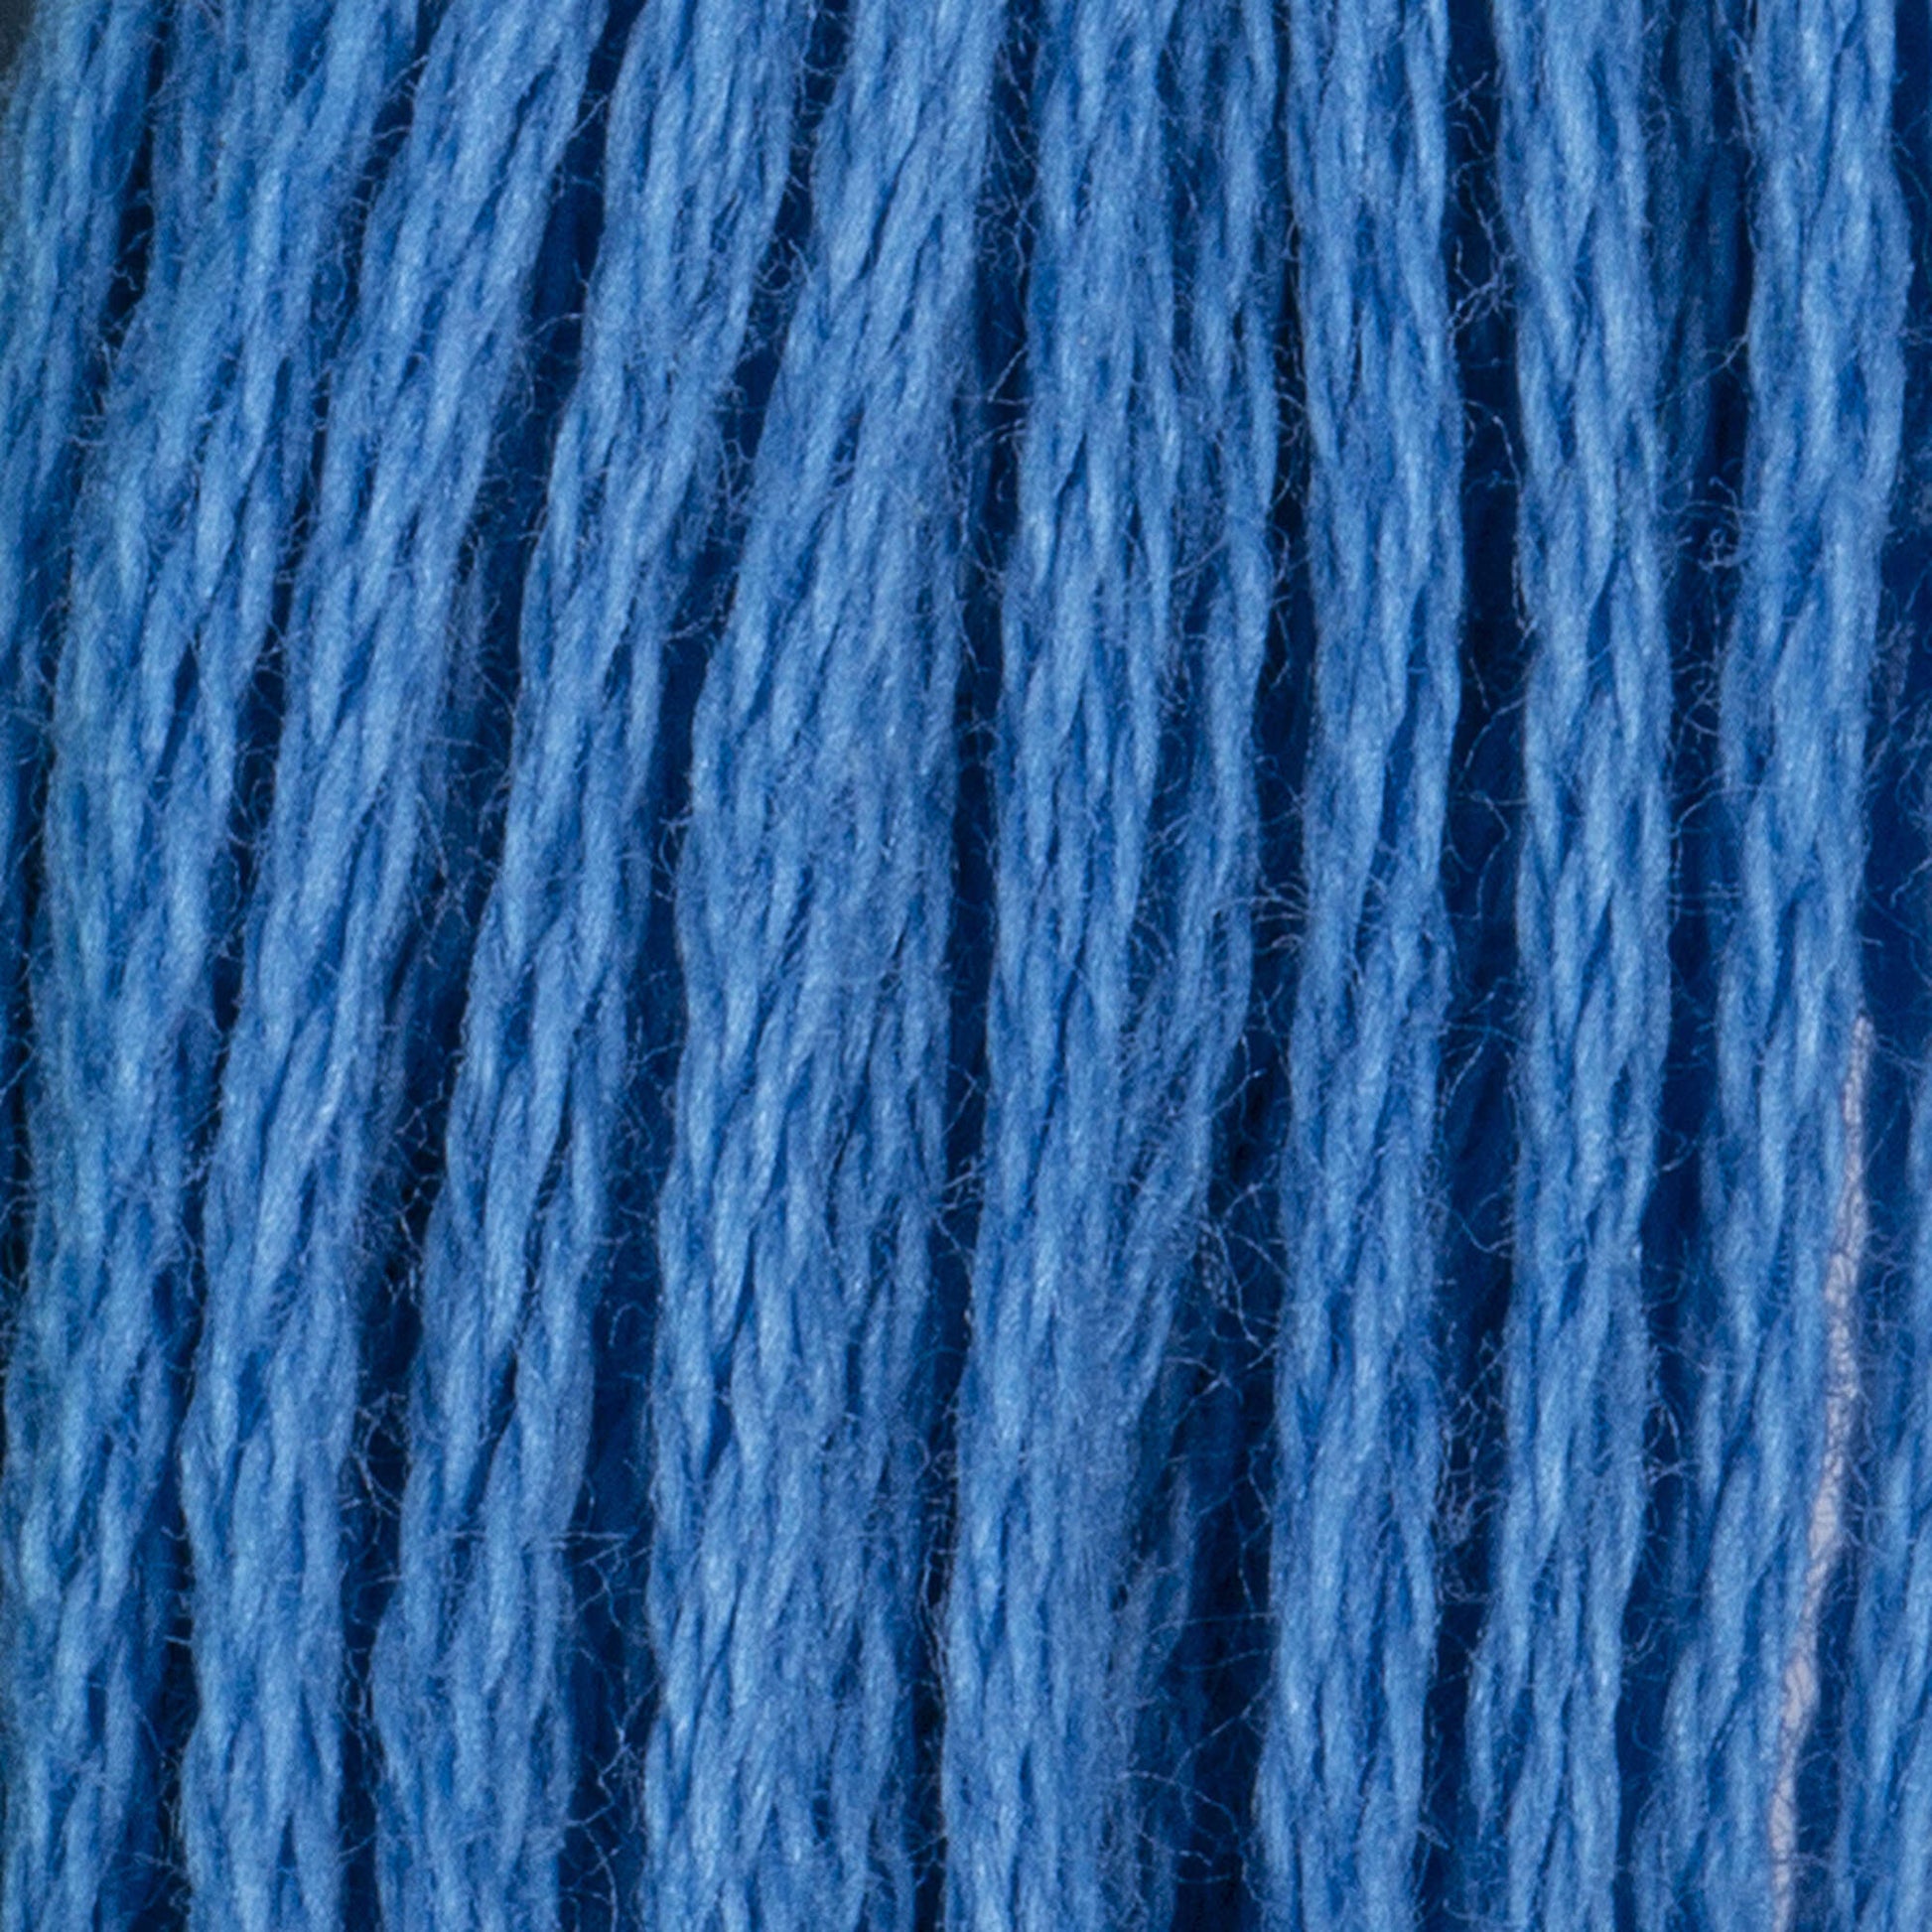 Coats & Clark Cotton Embroidery Floss Blue Light